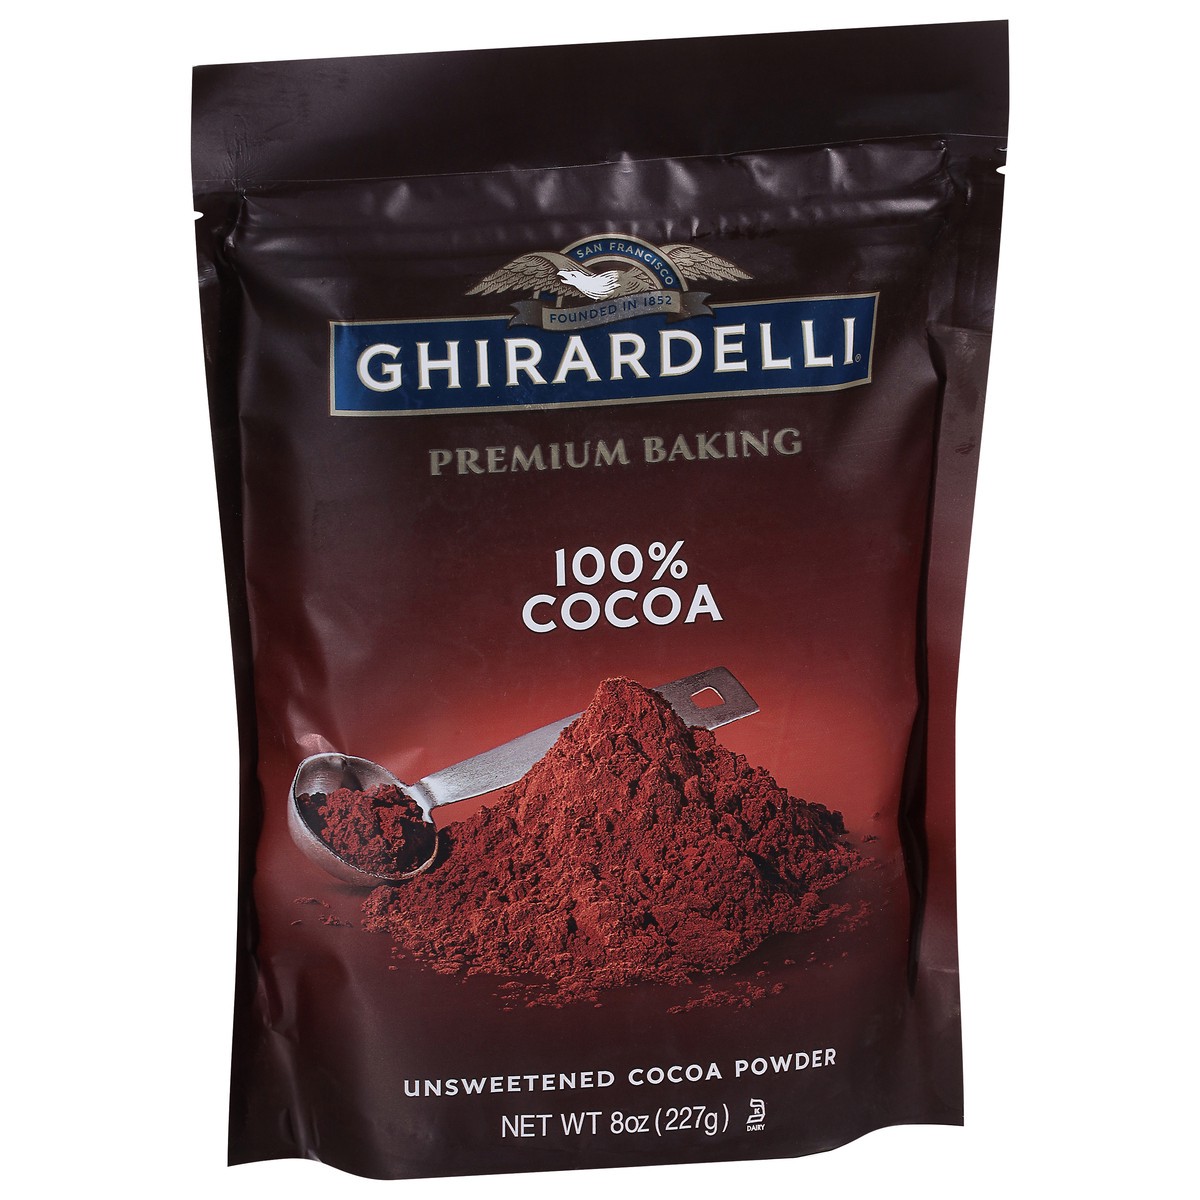 slide 2 of 9, GHIRARDELLI Premium Baking Cocoa 100% Unsweetened Cocoa Powder, 8 oz Bag, 8 oz